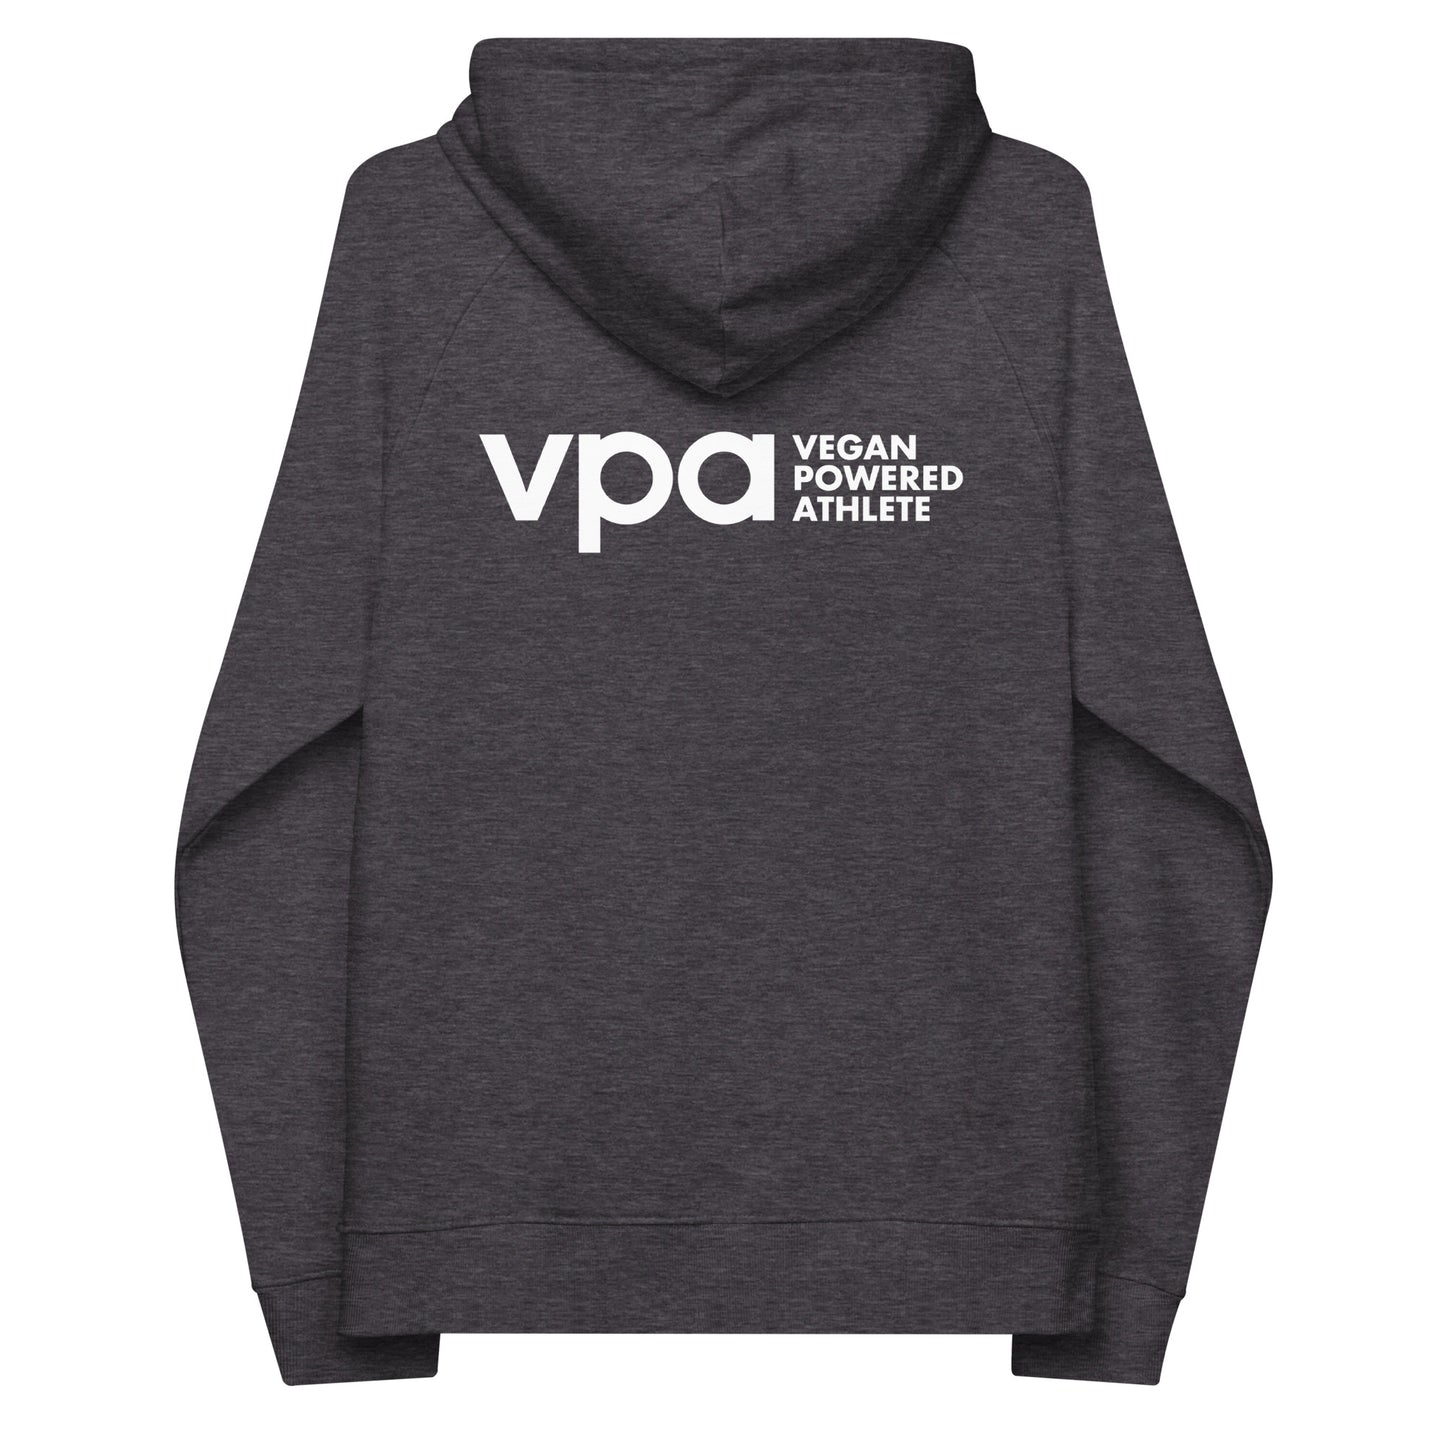 Load image into Gallery viewer, ECO VPA Vegan Powered Athlete Unisex raglan hoodie
